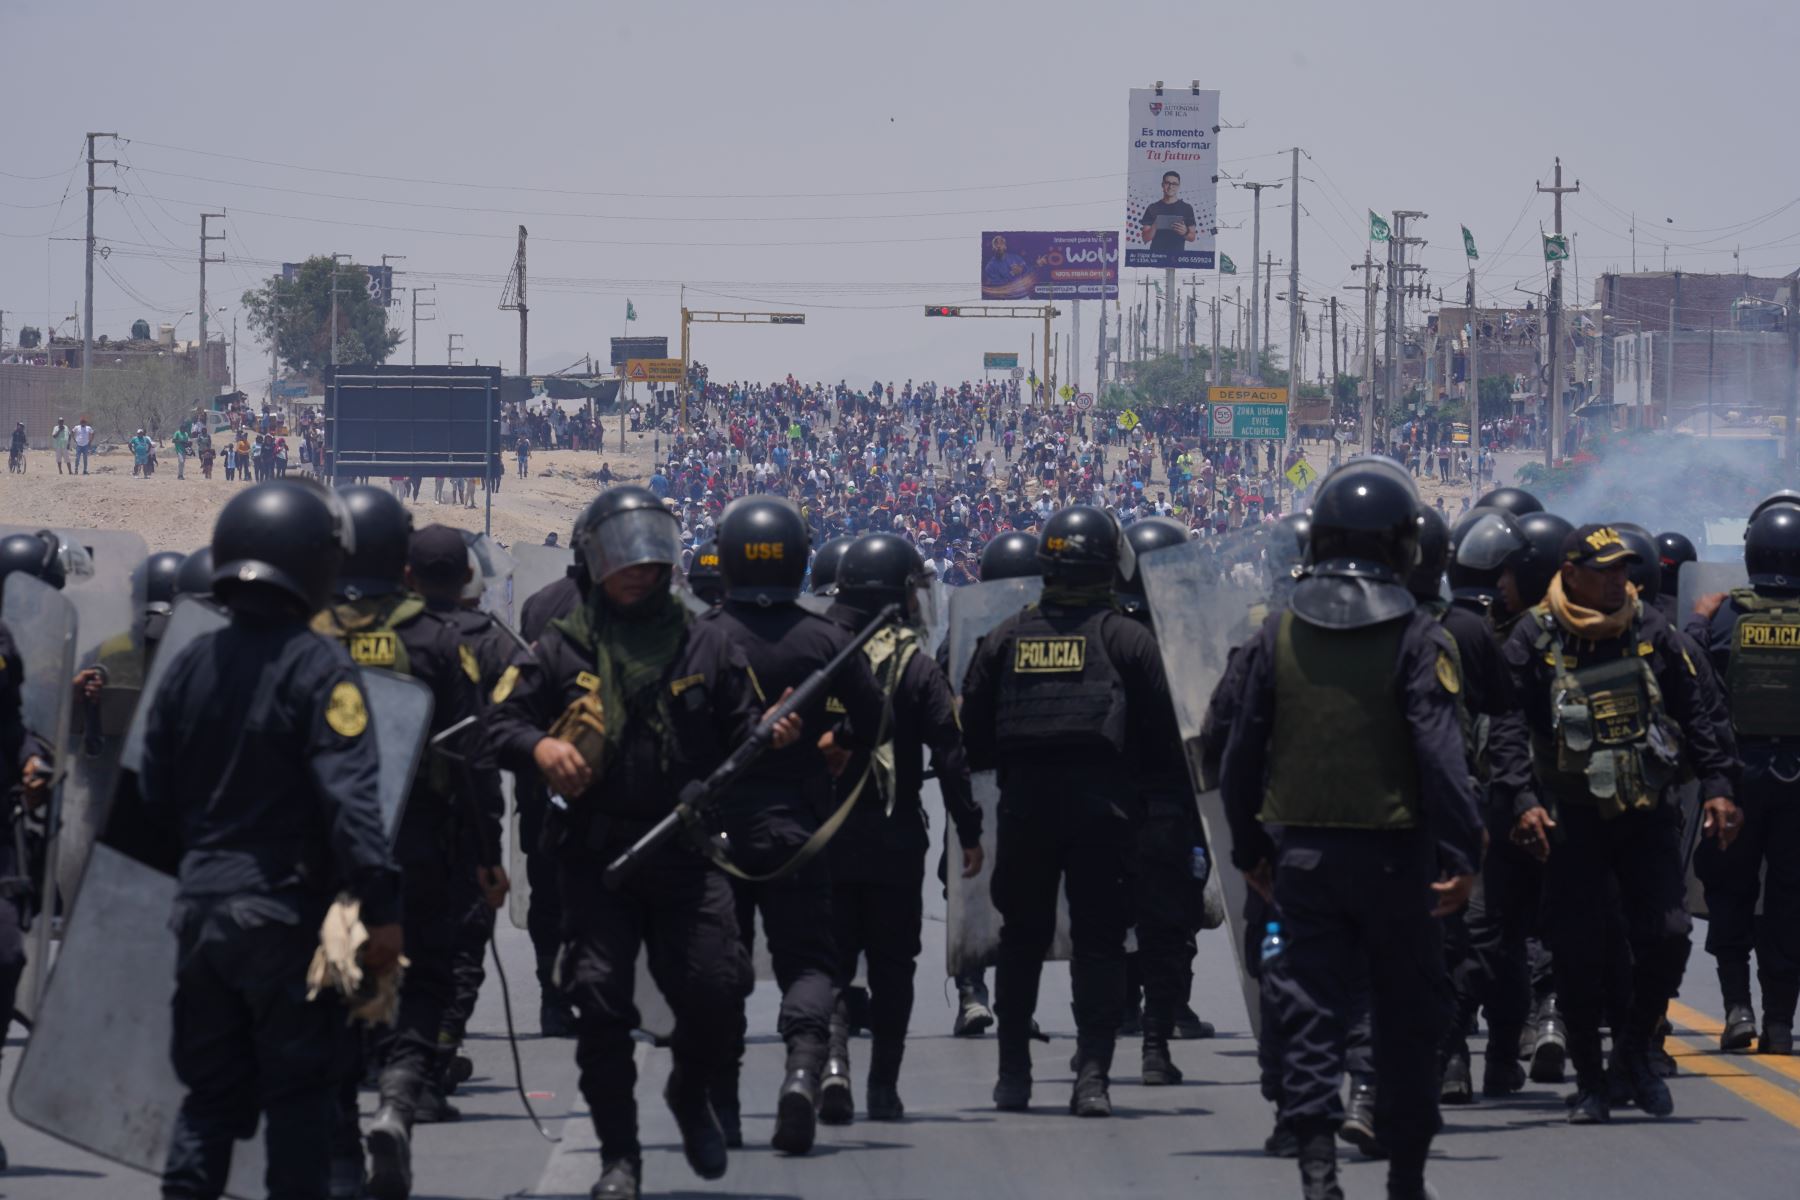 La Policía Nacional realiza operativo para desalojar a los manifestantes que bloquean la carretera Panamericana Sur en Ica desde el jueves 19 de enero. Foto: Genry Bautista